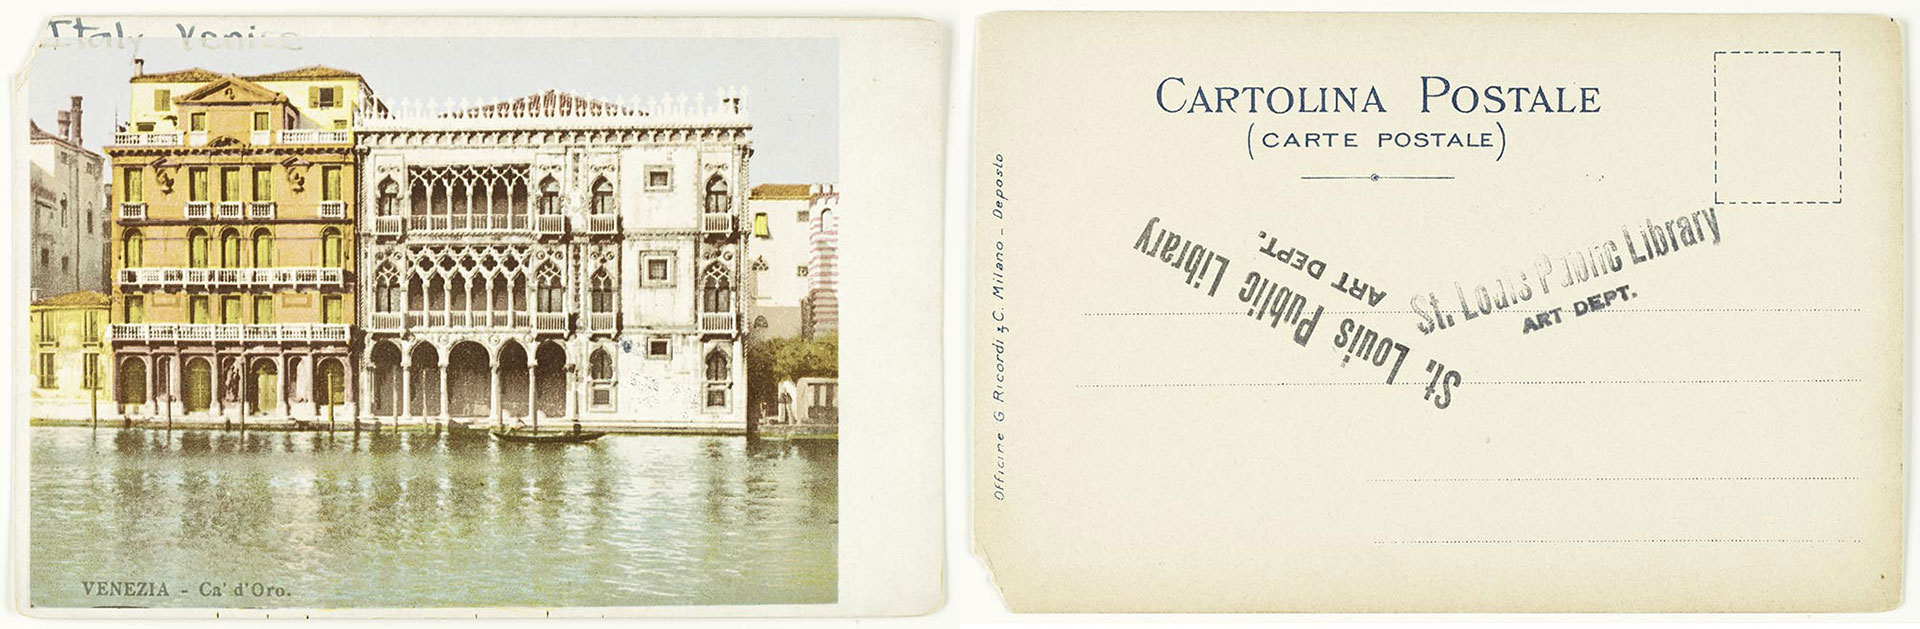 Ca' d' Oro - Venice, Italy ca. 1910